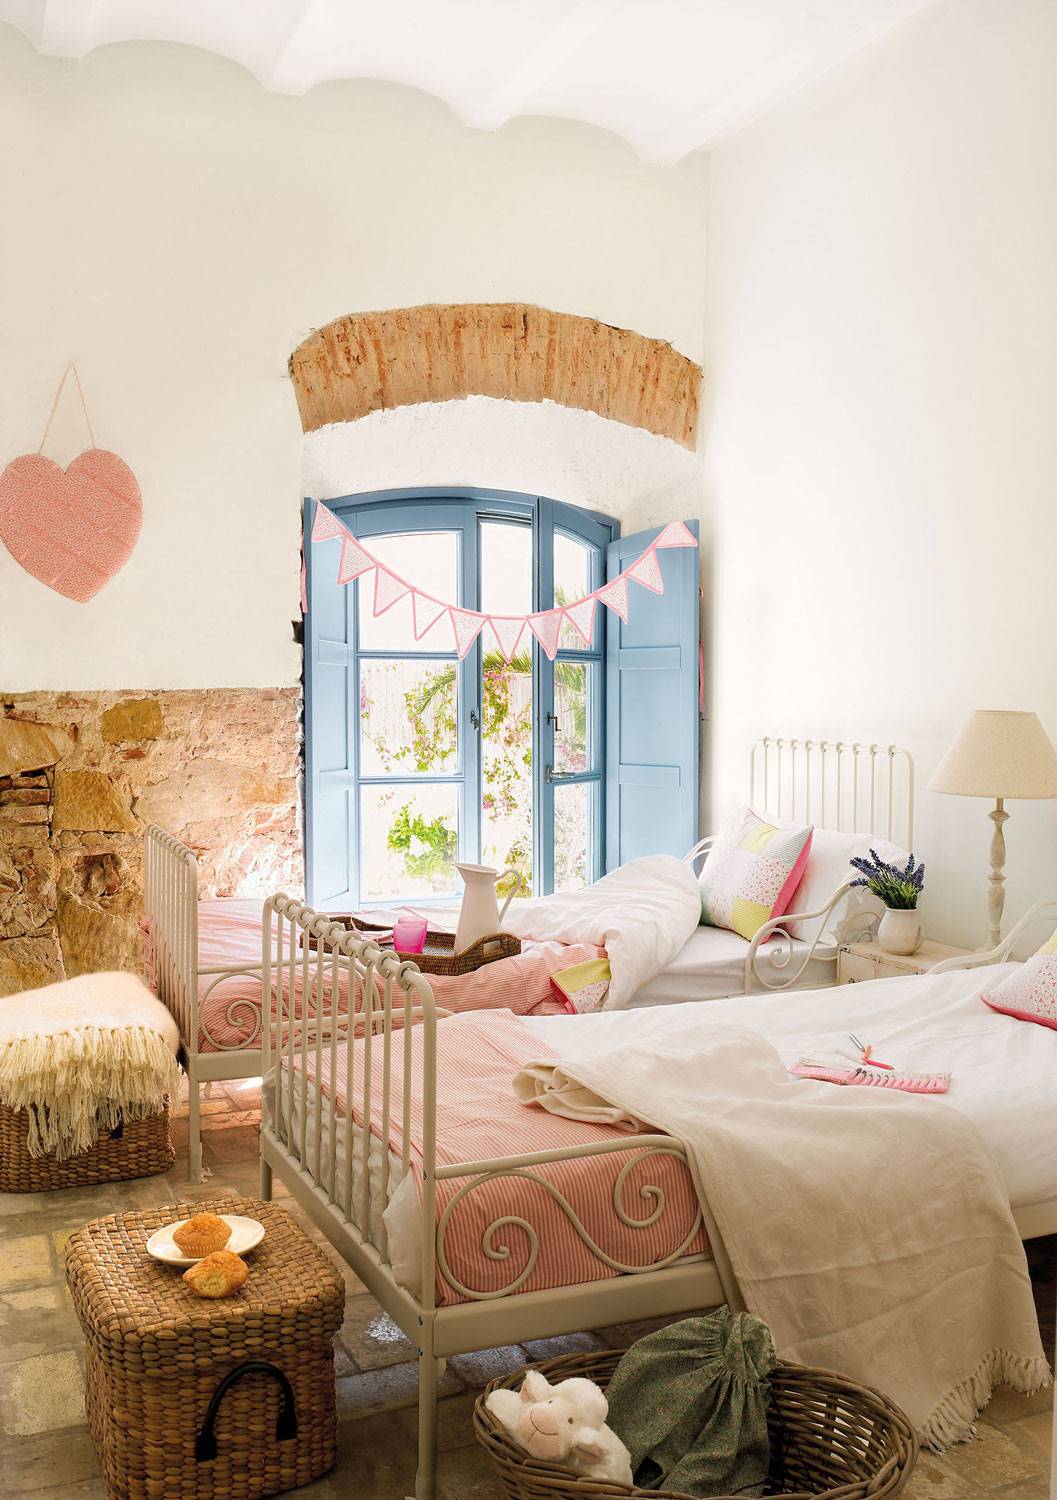 11. candida-y-dulce-habitacion-infantil-con-dos-camas-en-paralelo-y-paredes-de-piedra bb8b777b